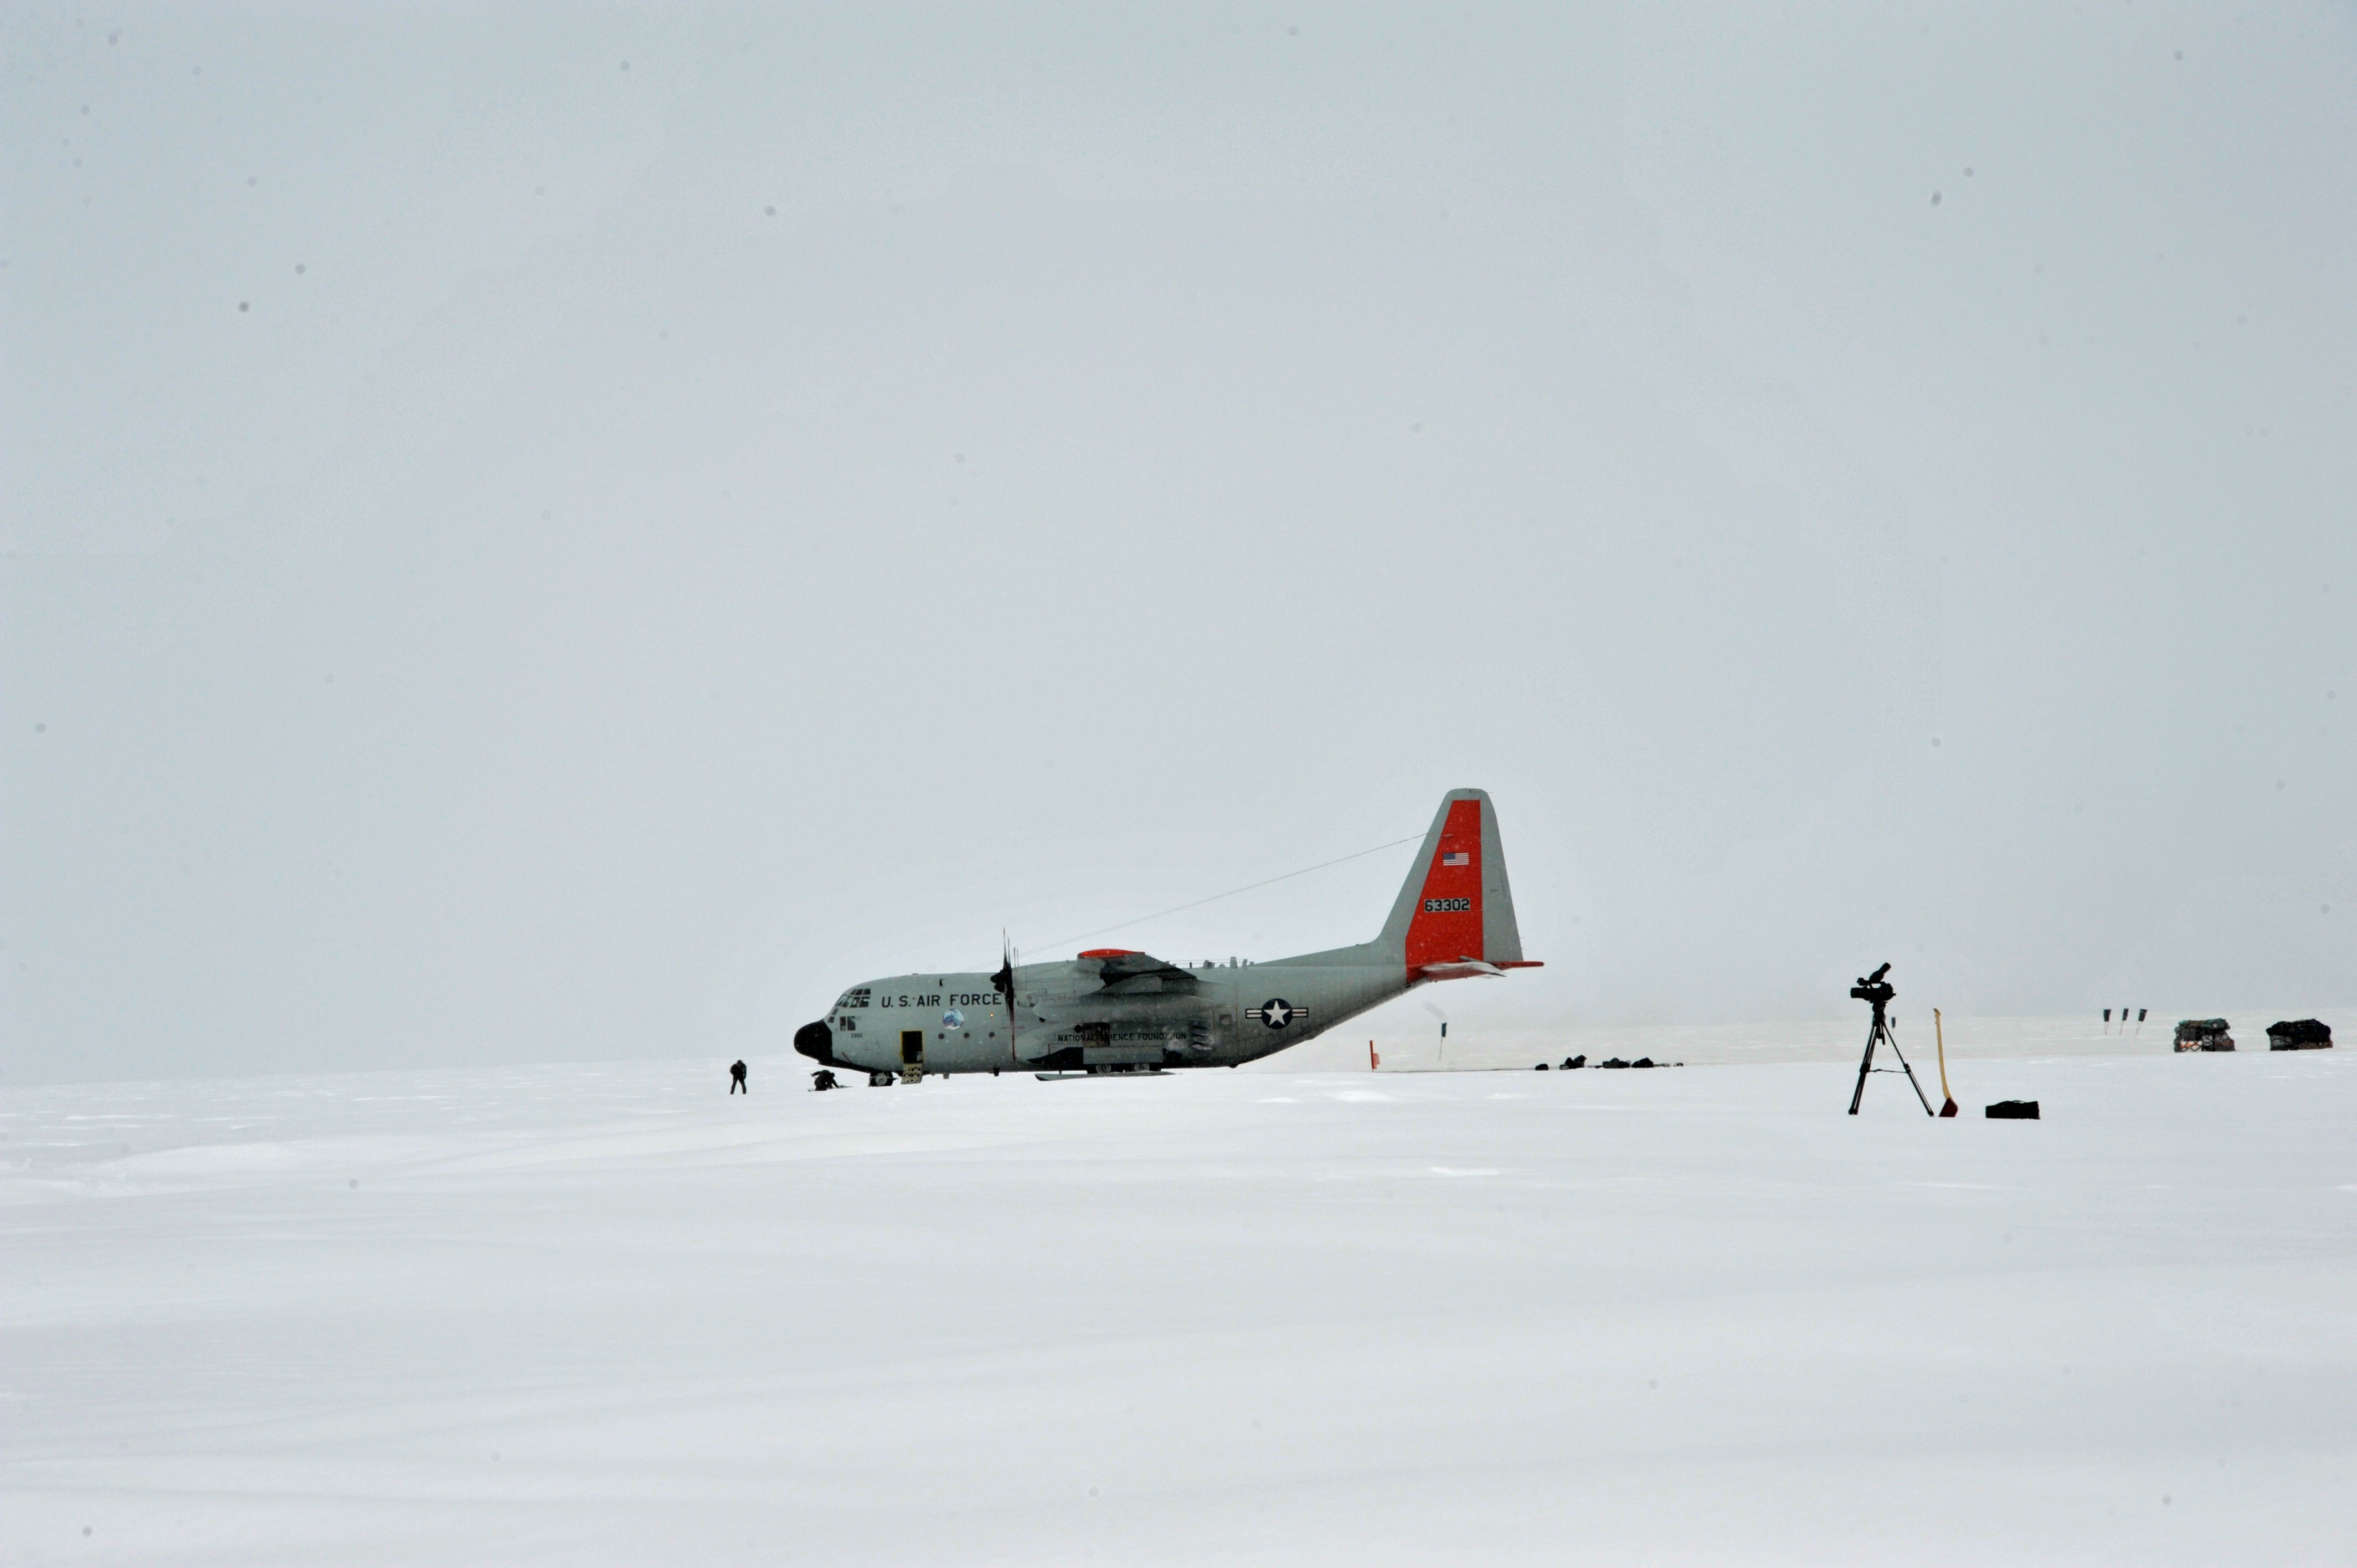 Fra lejrens 'main dome' (kuppel) ses 'Skier 02' ankomme med det første hold personel til den tomme lejr